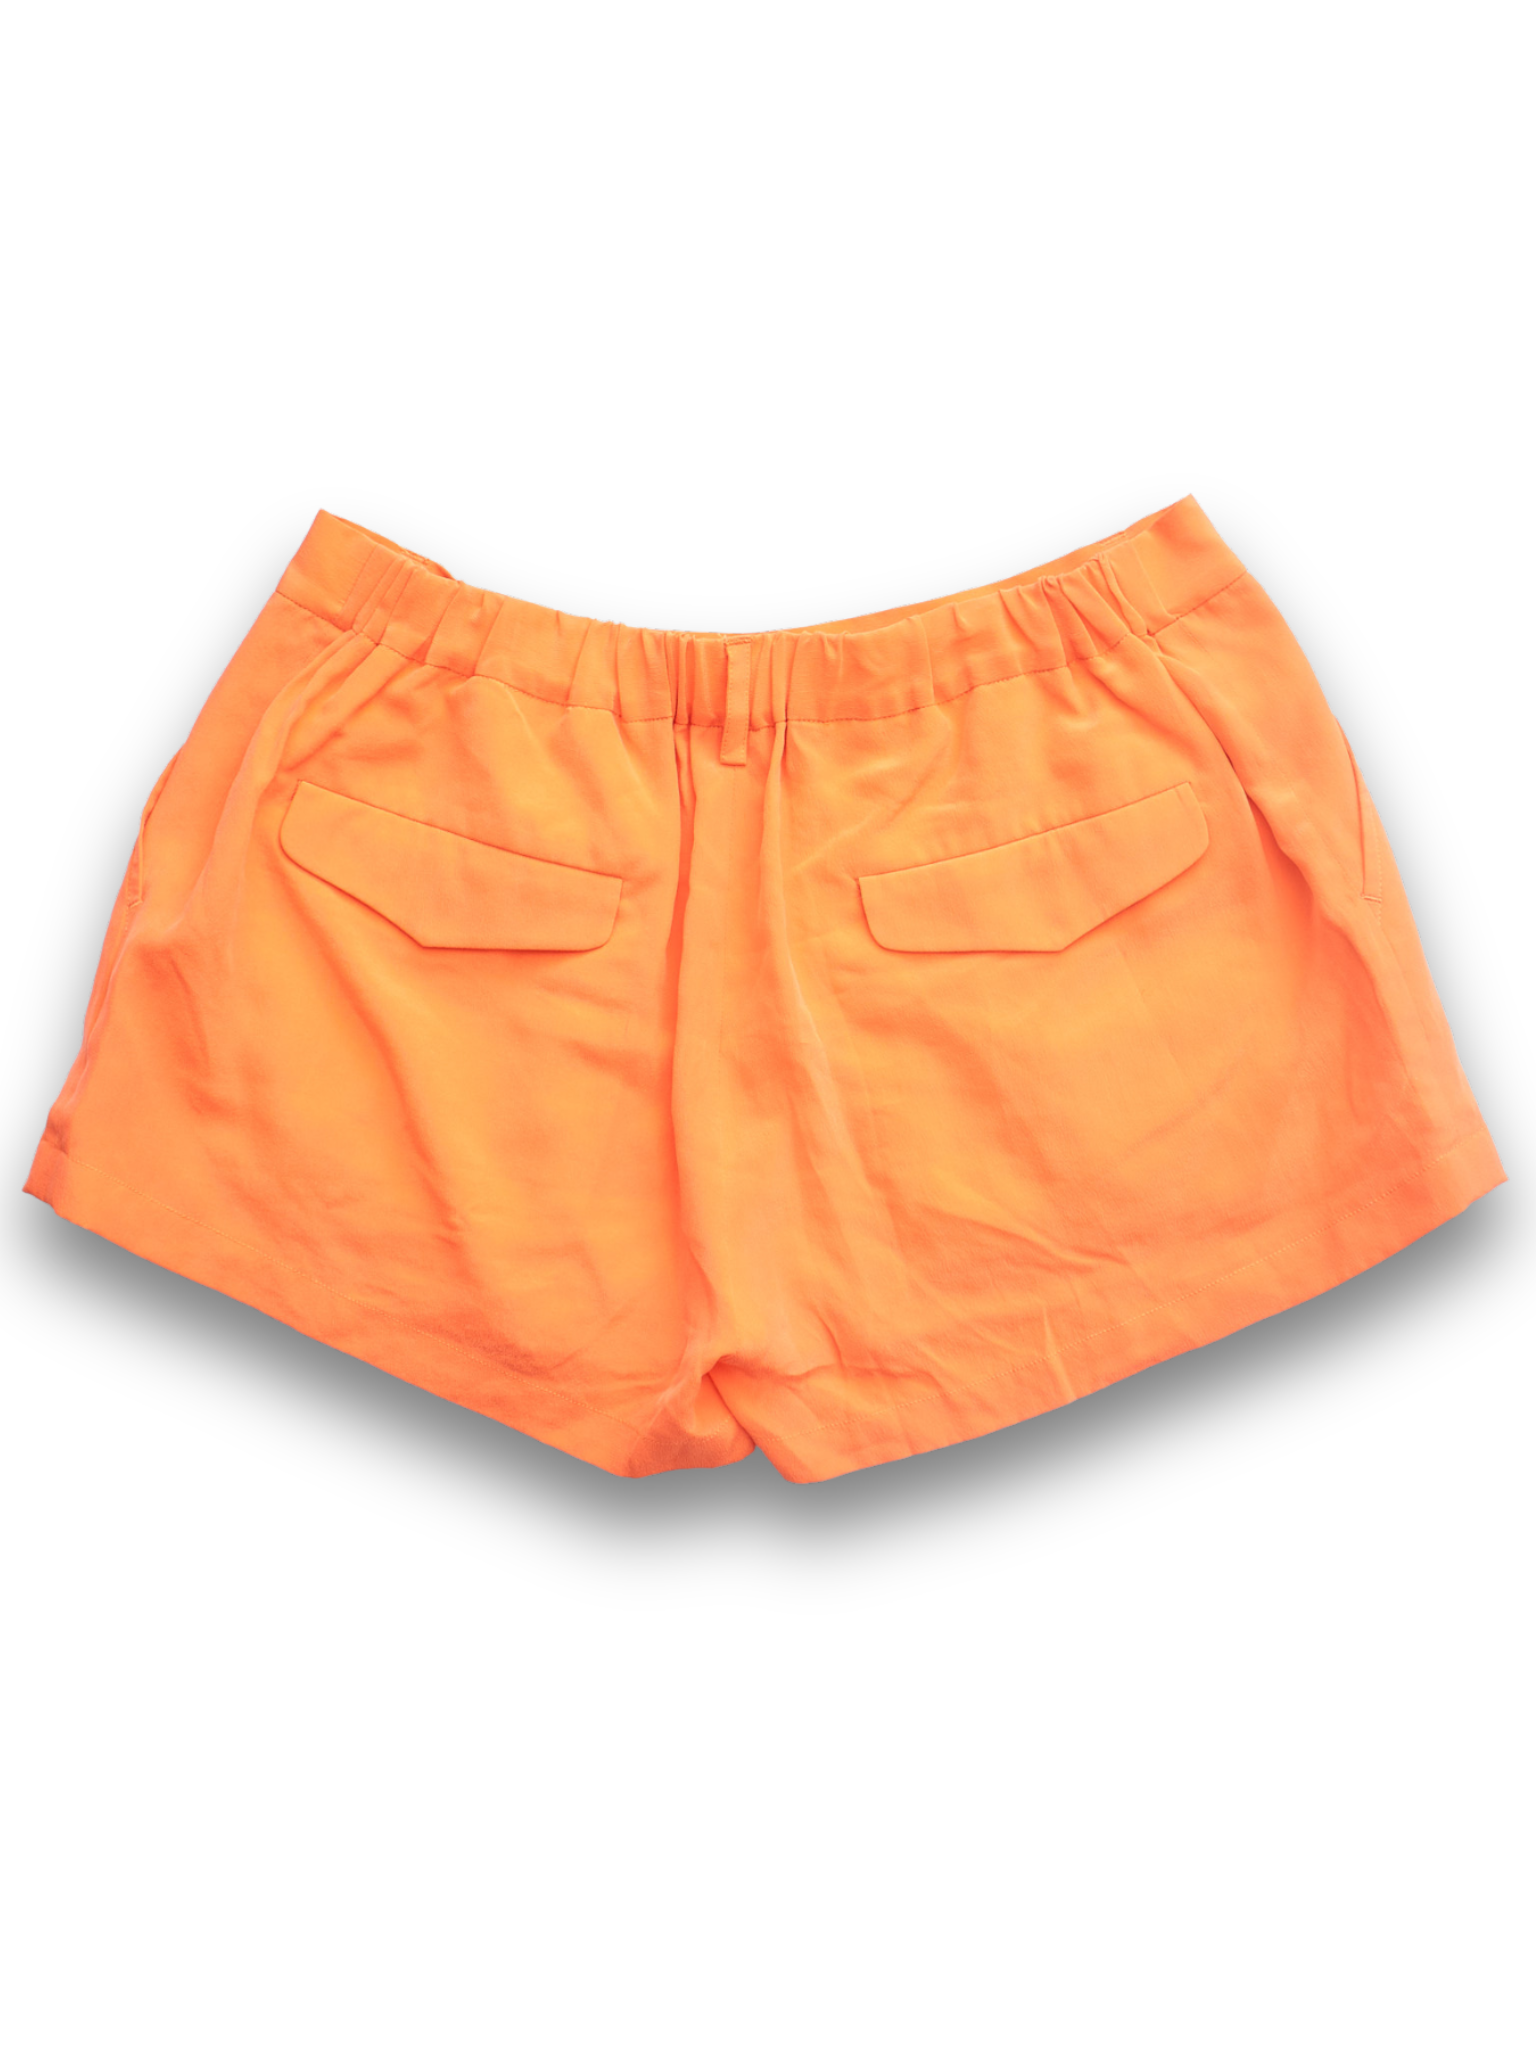 Orange Silk Short Shorts